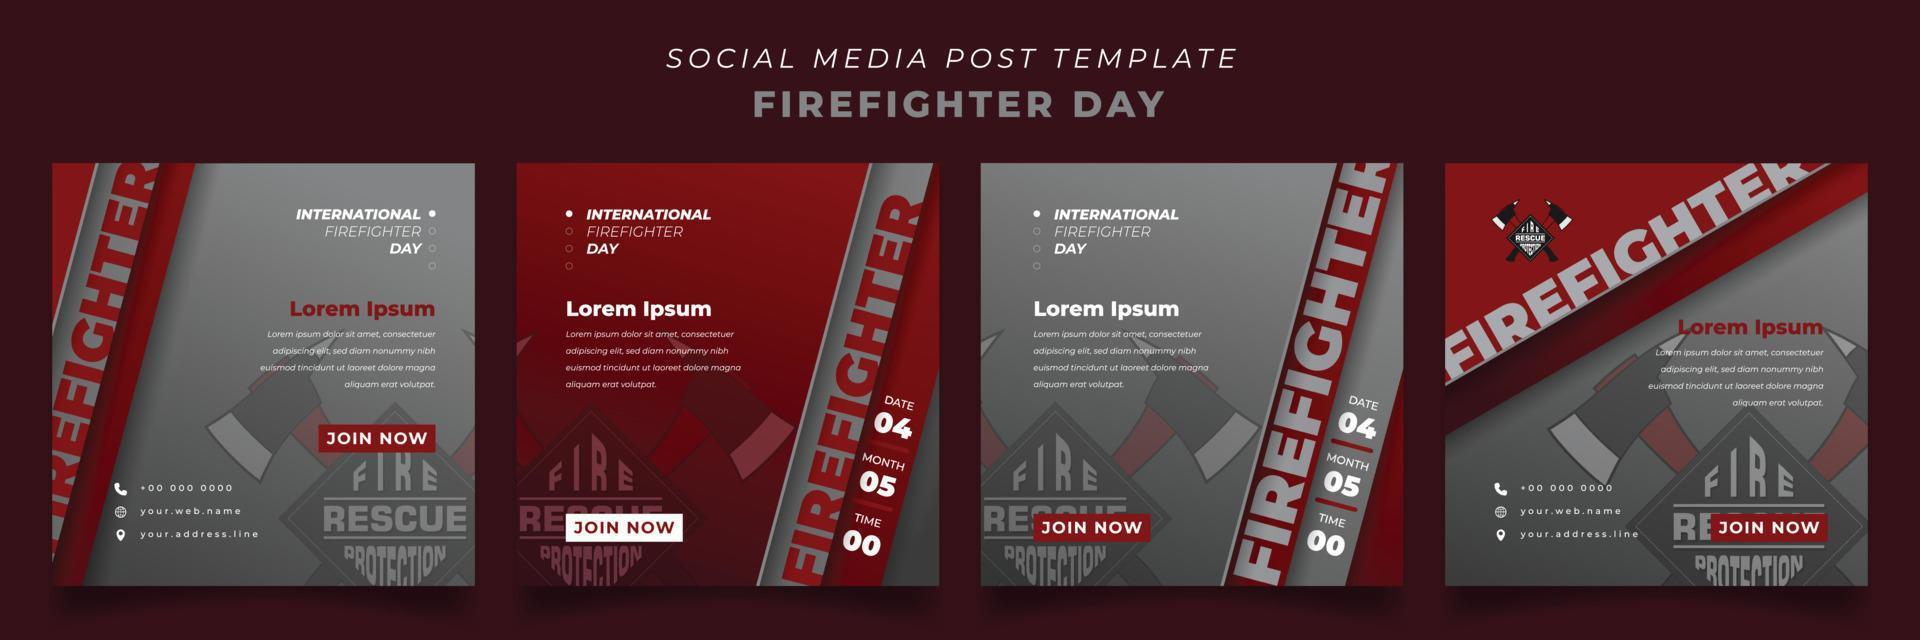 conjunto de plantillas de publicaciones en redes sociales con fondo rojo y gris para el diseño del día de los bomberos vector